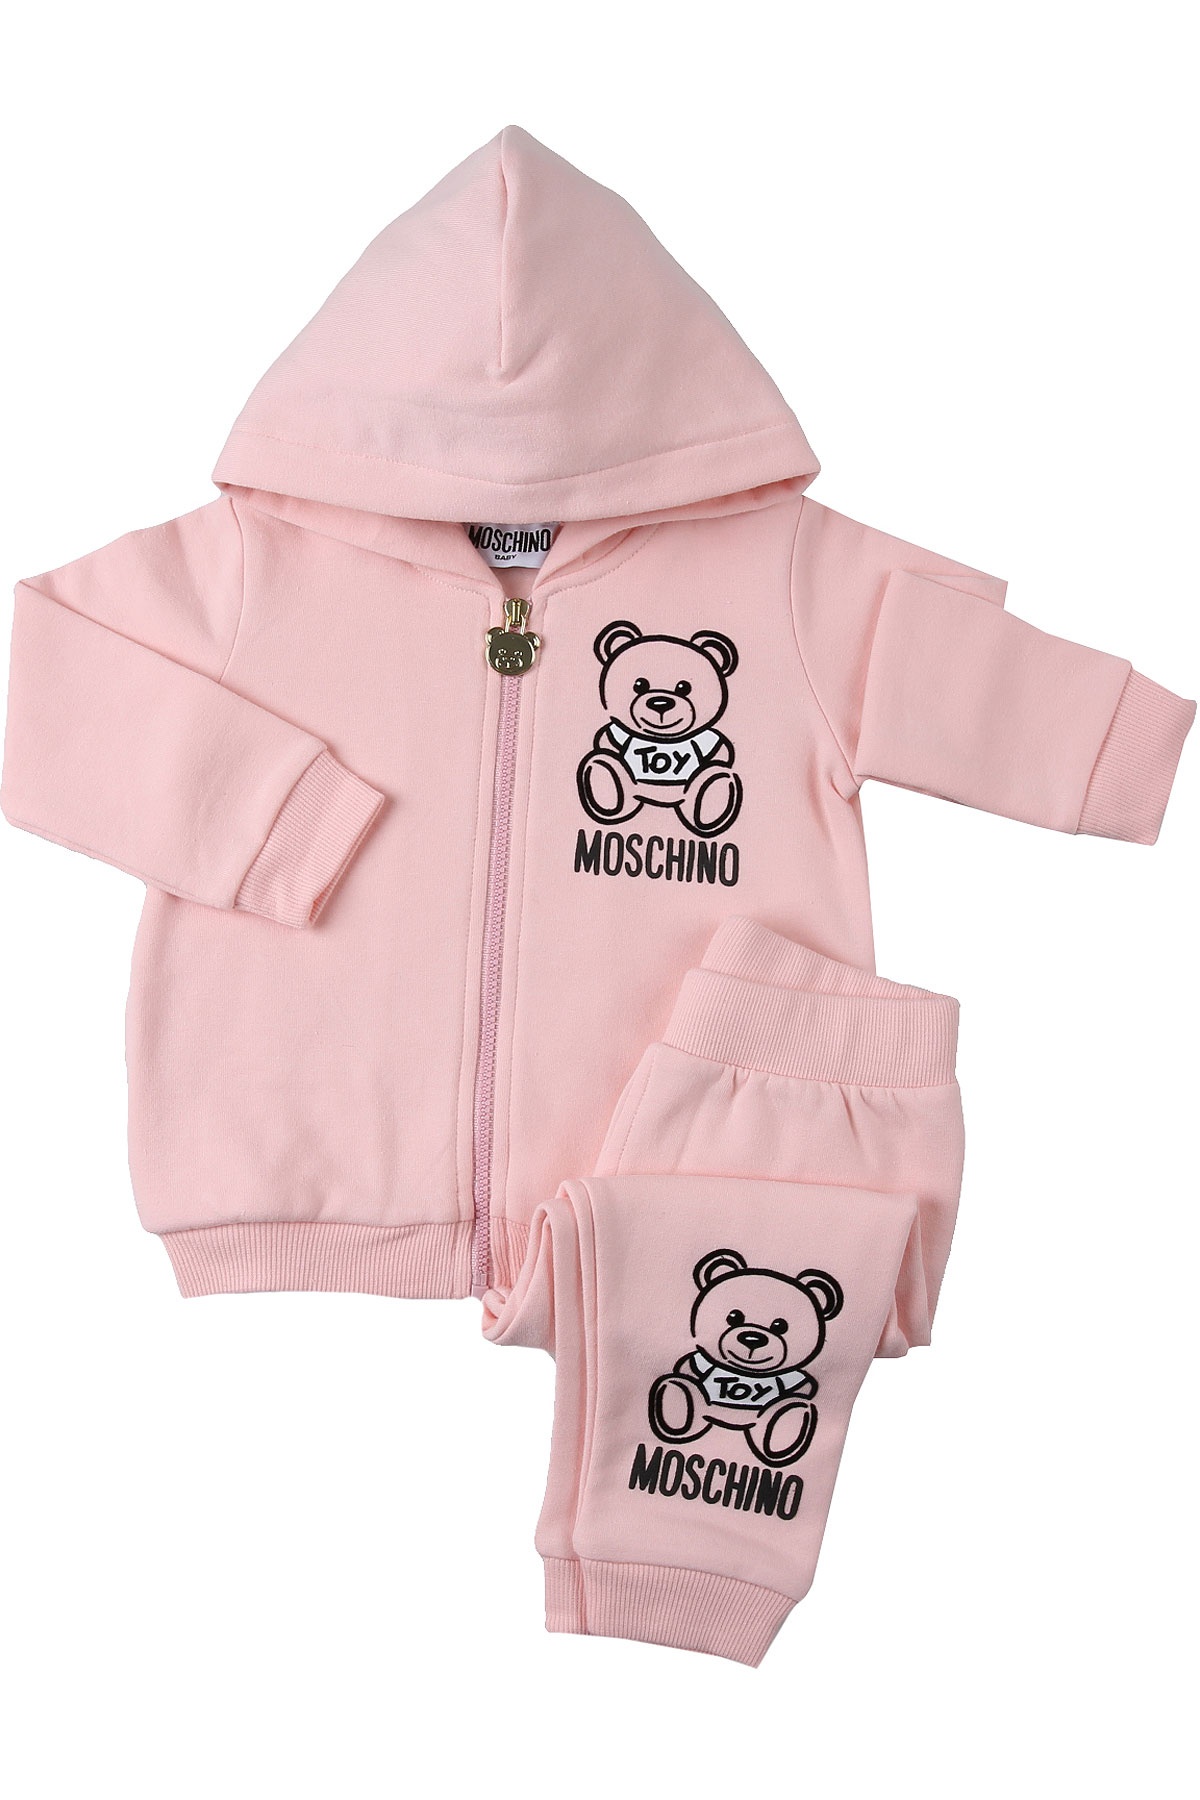 Moschino Babykleidung für Mädchen Günstig im Sale, Hell Pink, Baumwolle, 2017, 12M 18M 24M 2Y 3Y 9M